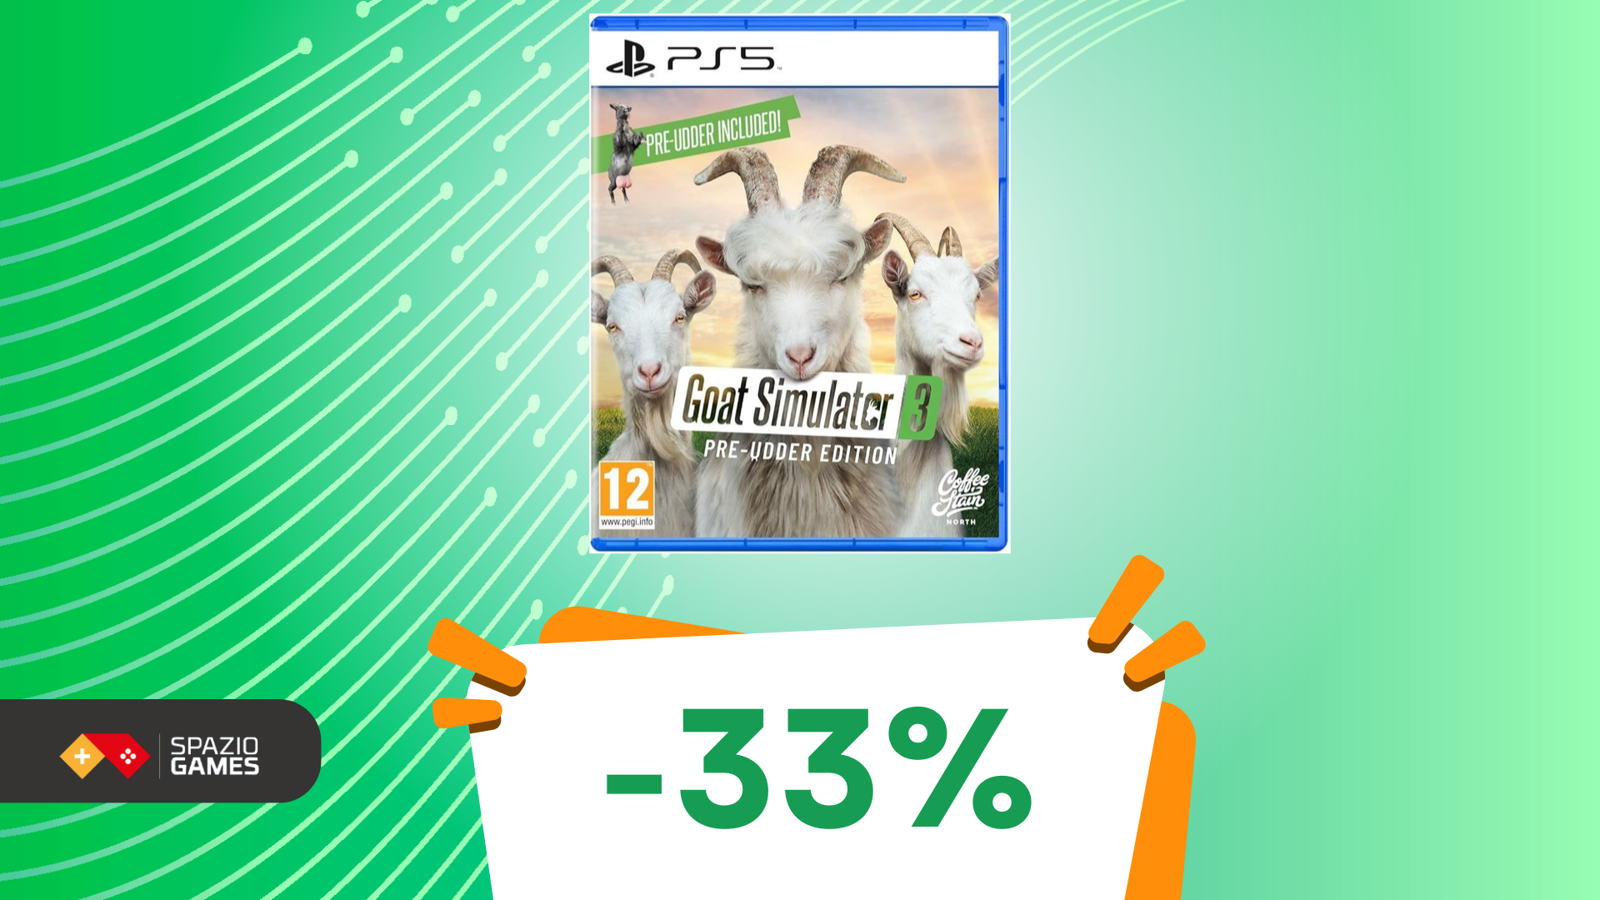 Caos e capre vi aspettano con Goat Simulator 3 a 20€!